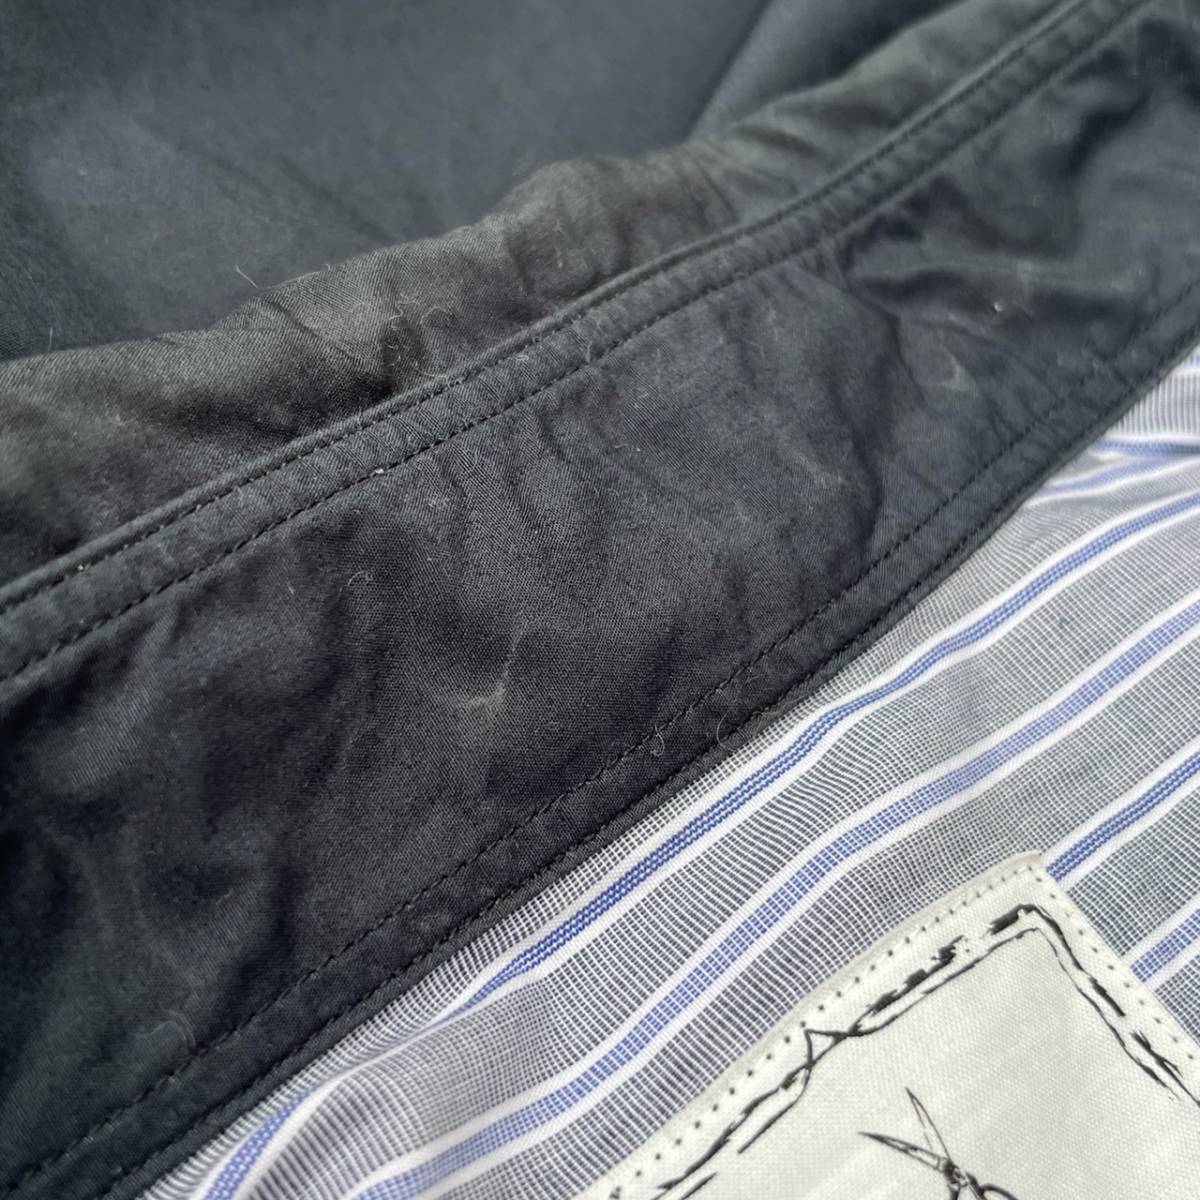 BLACK&BLUE ブラックアンドブルー サイズ3 クレイジーパターンシャツ 長袖シャツ マルチカラー